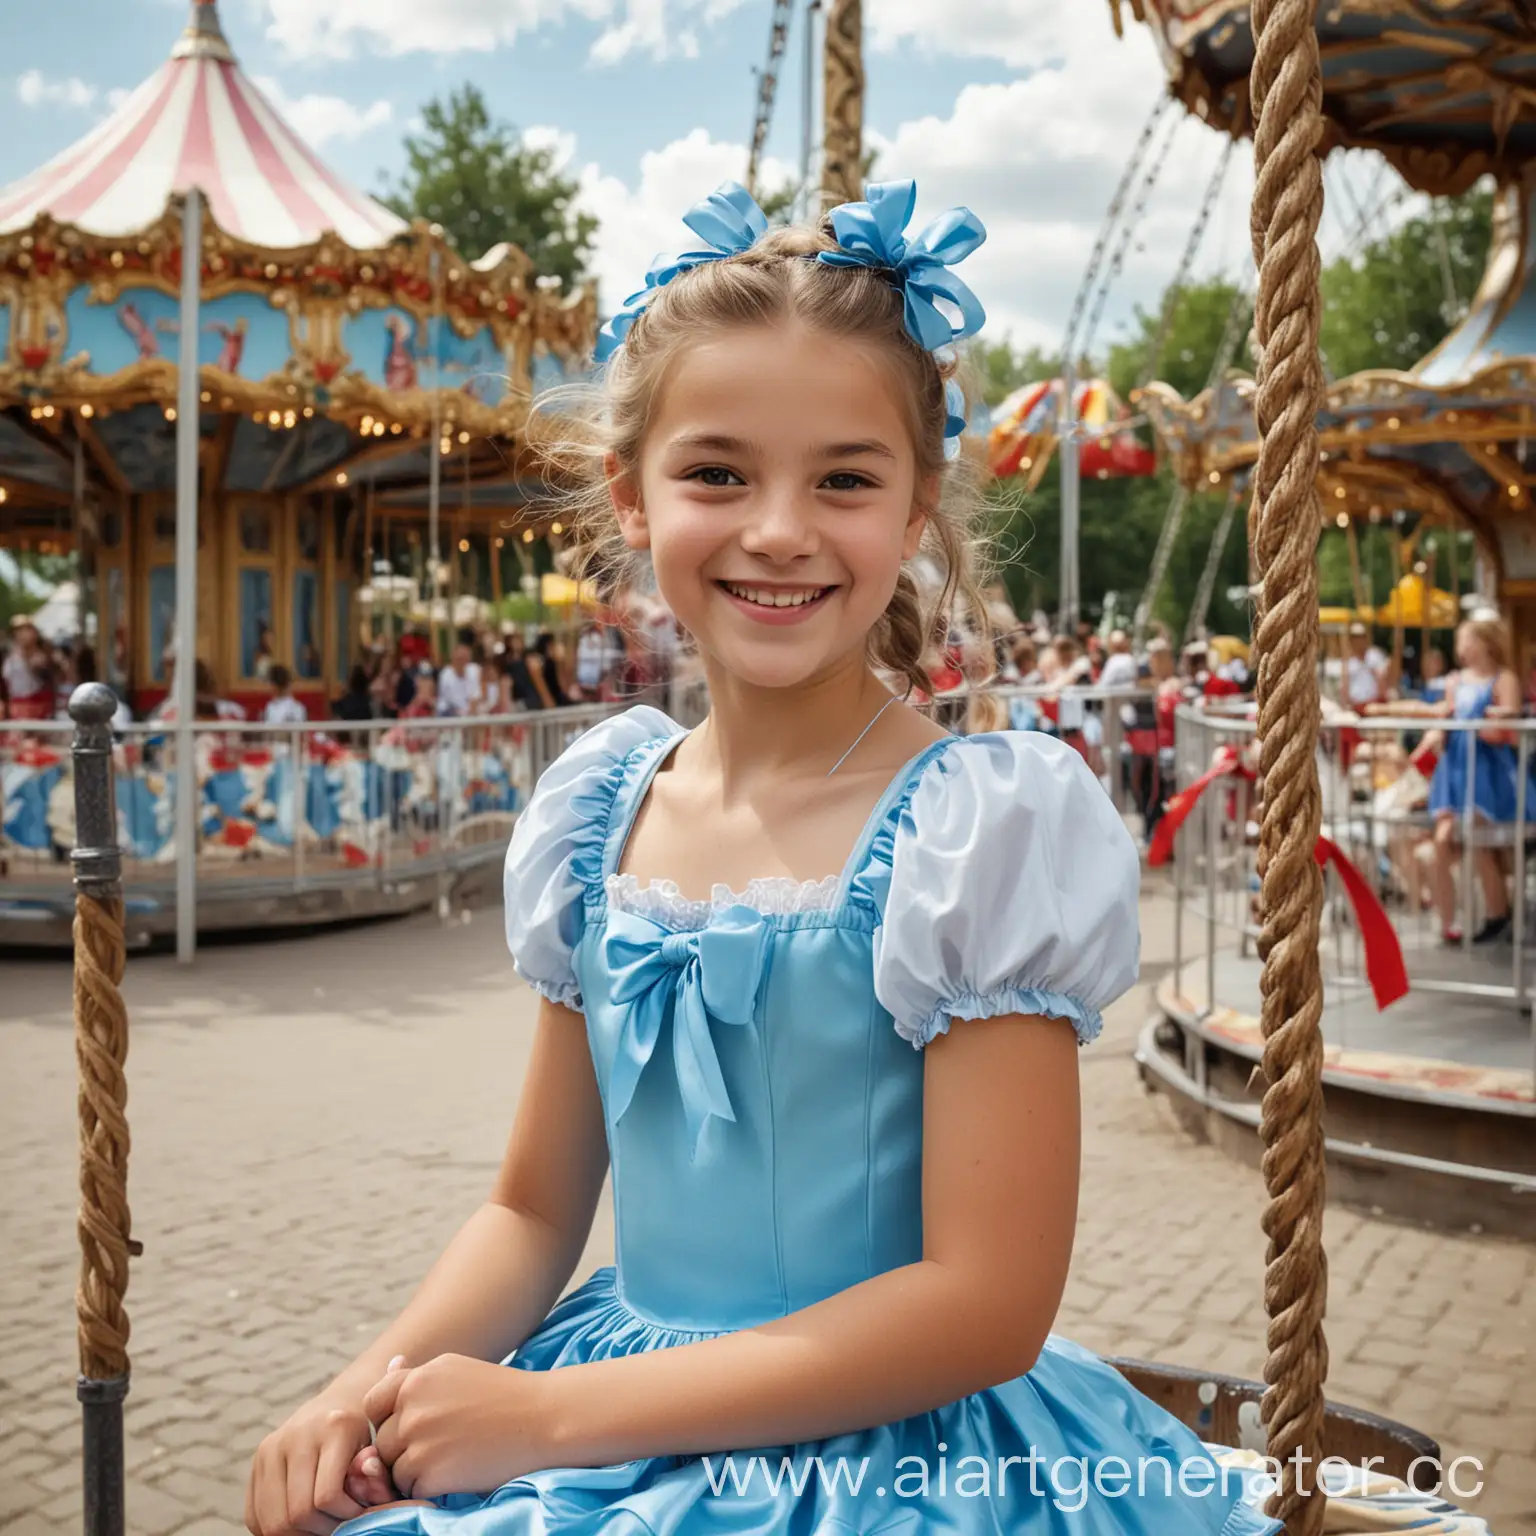 Реальная фотография. Девочка 12 лет катается на каруселях в парке аттракционов. Лето. На девочке синее платье и ленточки в волосах. Девочка улыбается.